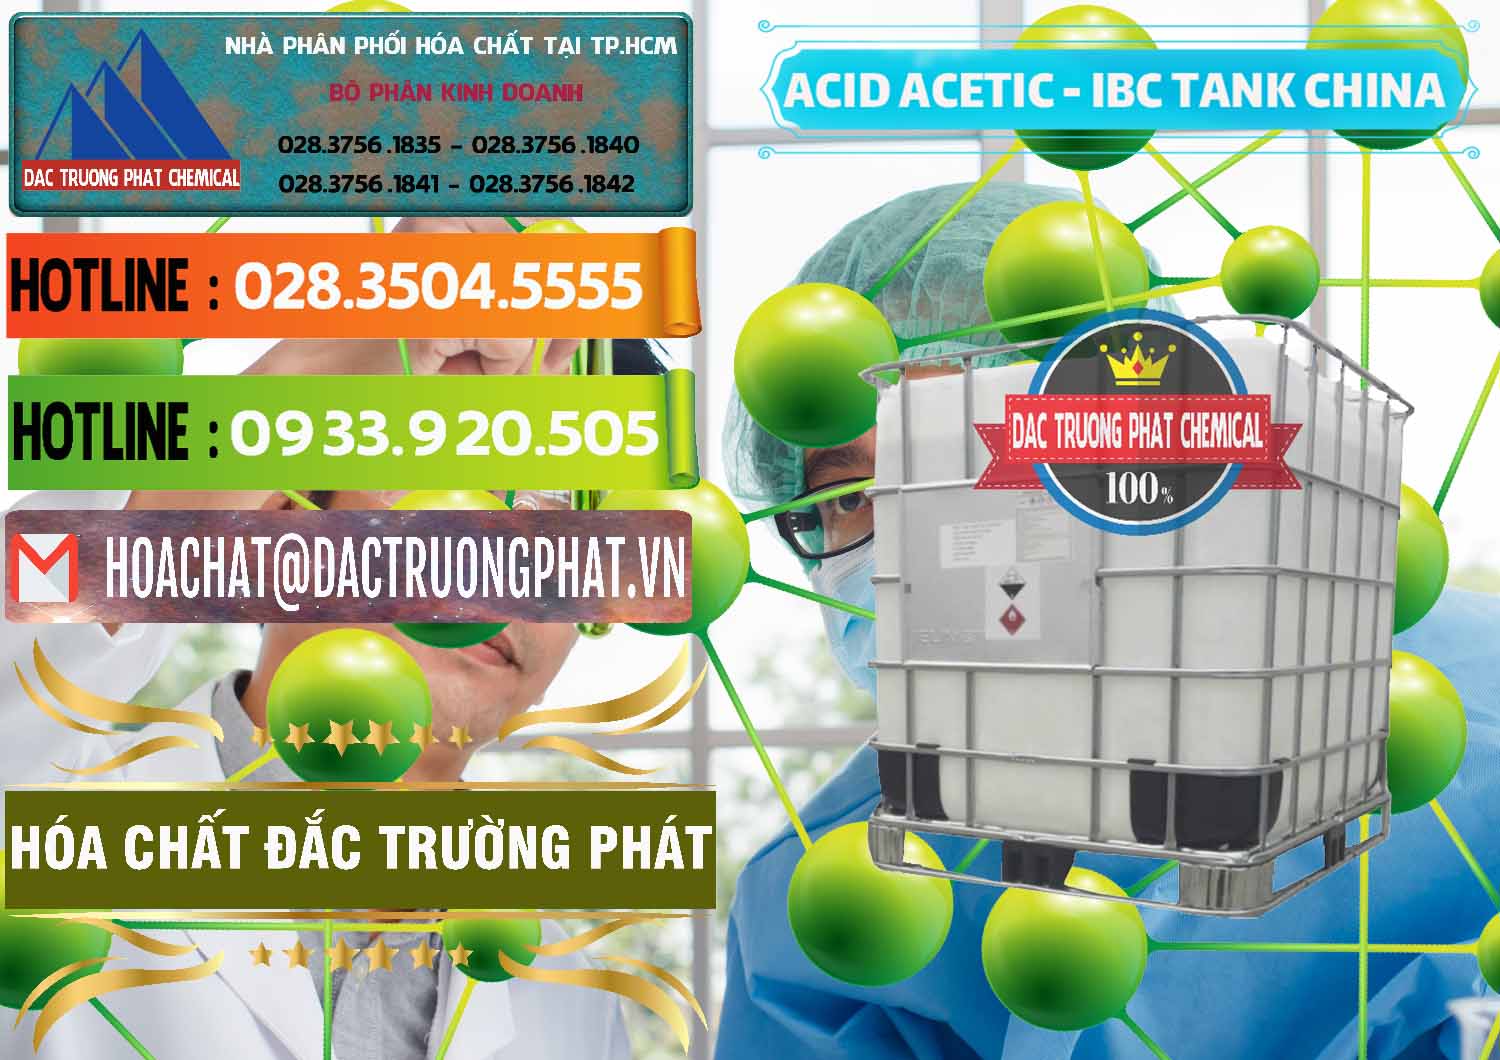 Cty chuyên bán & phân phối Acetic Acid – Axit Acetic Tank Bồn IBC Trung Quốc China - 0443 - Cty chuyên cung cấp & bán hóa chất tại TP.HCM - cungcaphoachat.com.vn